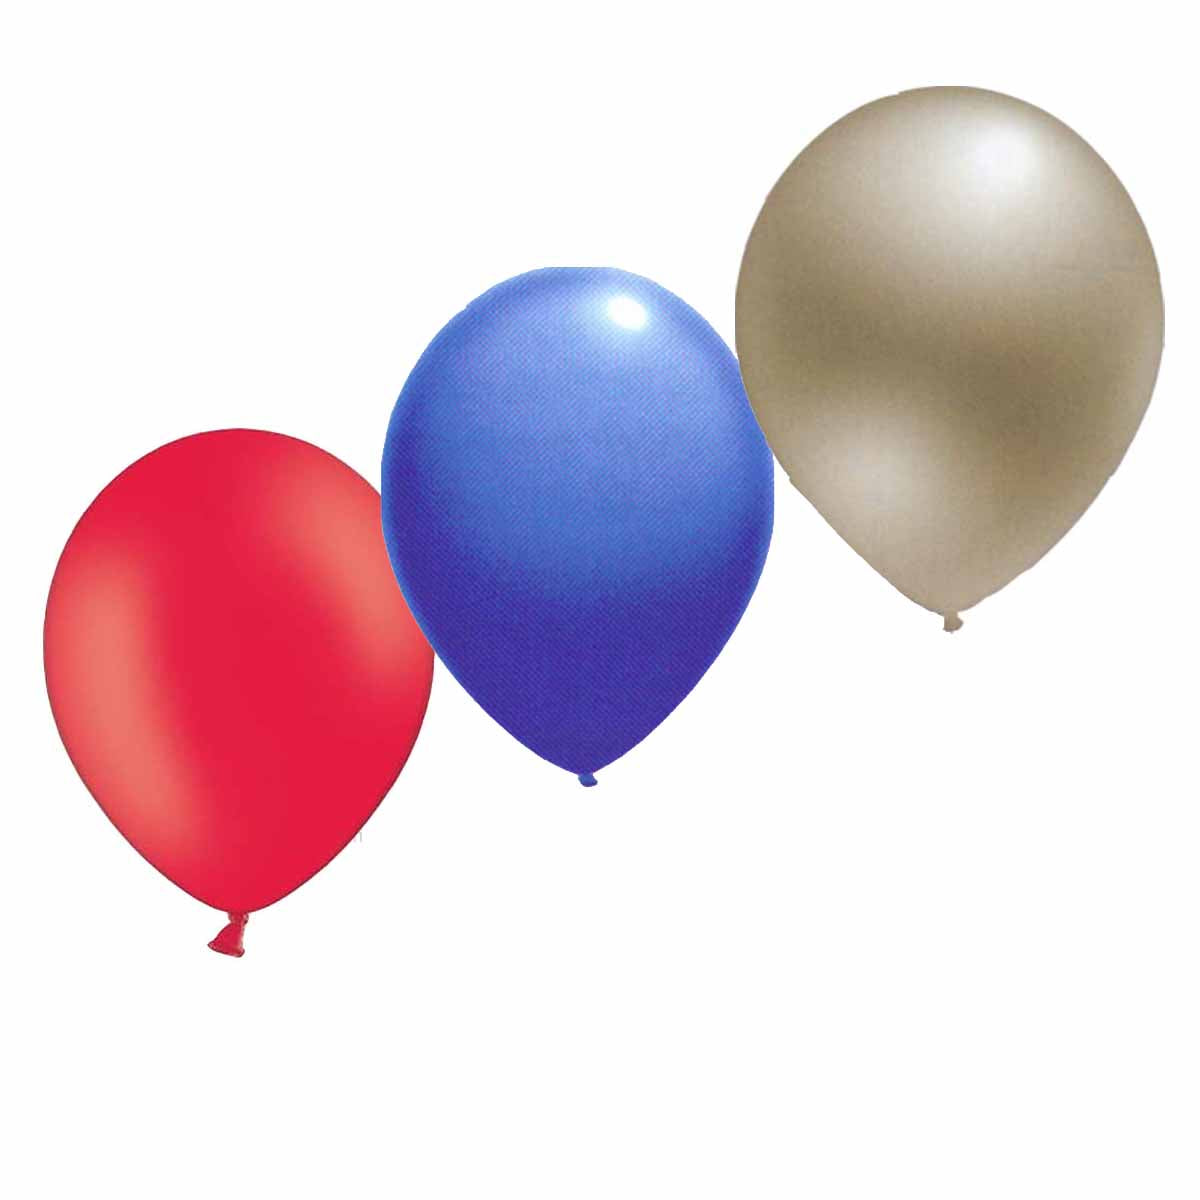 Ballons Blau/Rot/Silber 6 Stück